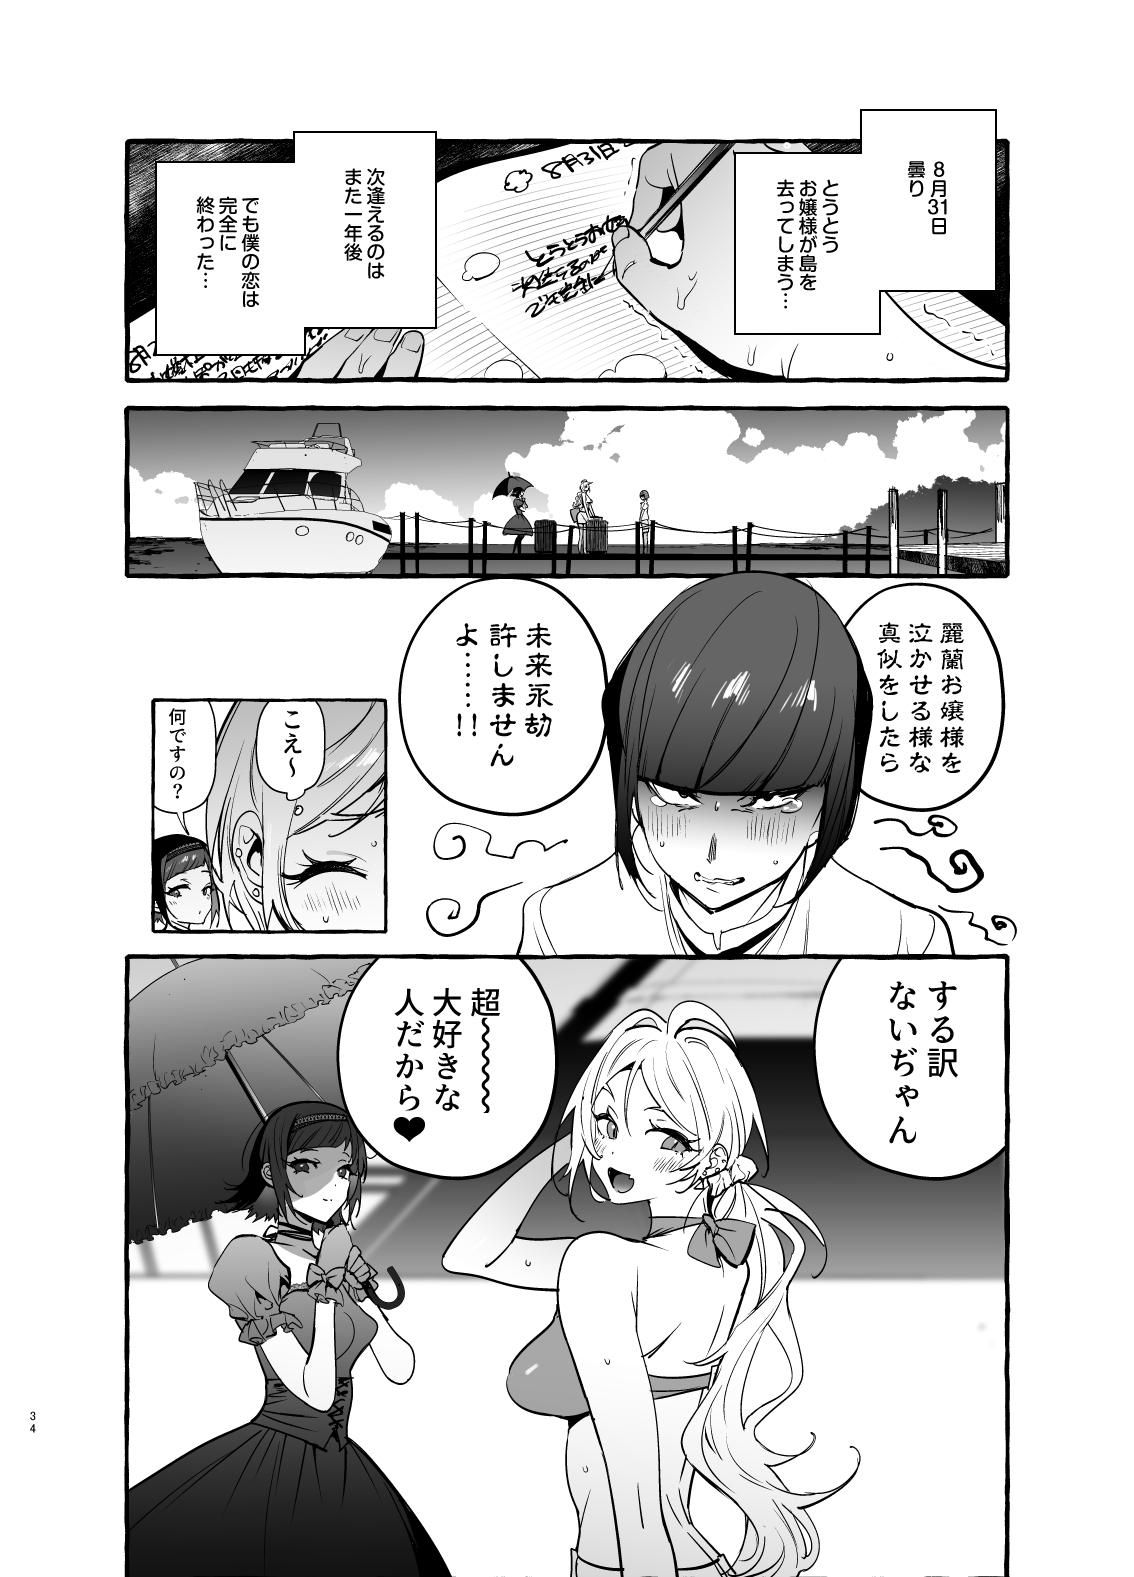 Hiddencam フタナリさんとノンケさん♀バカンス編 - Original Amateur - Page 35